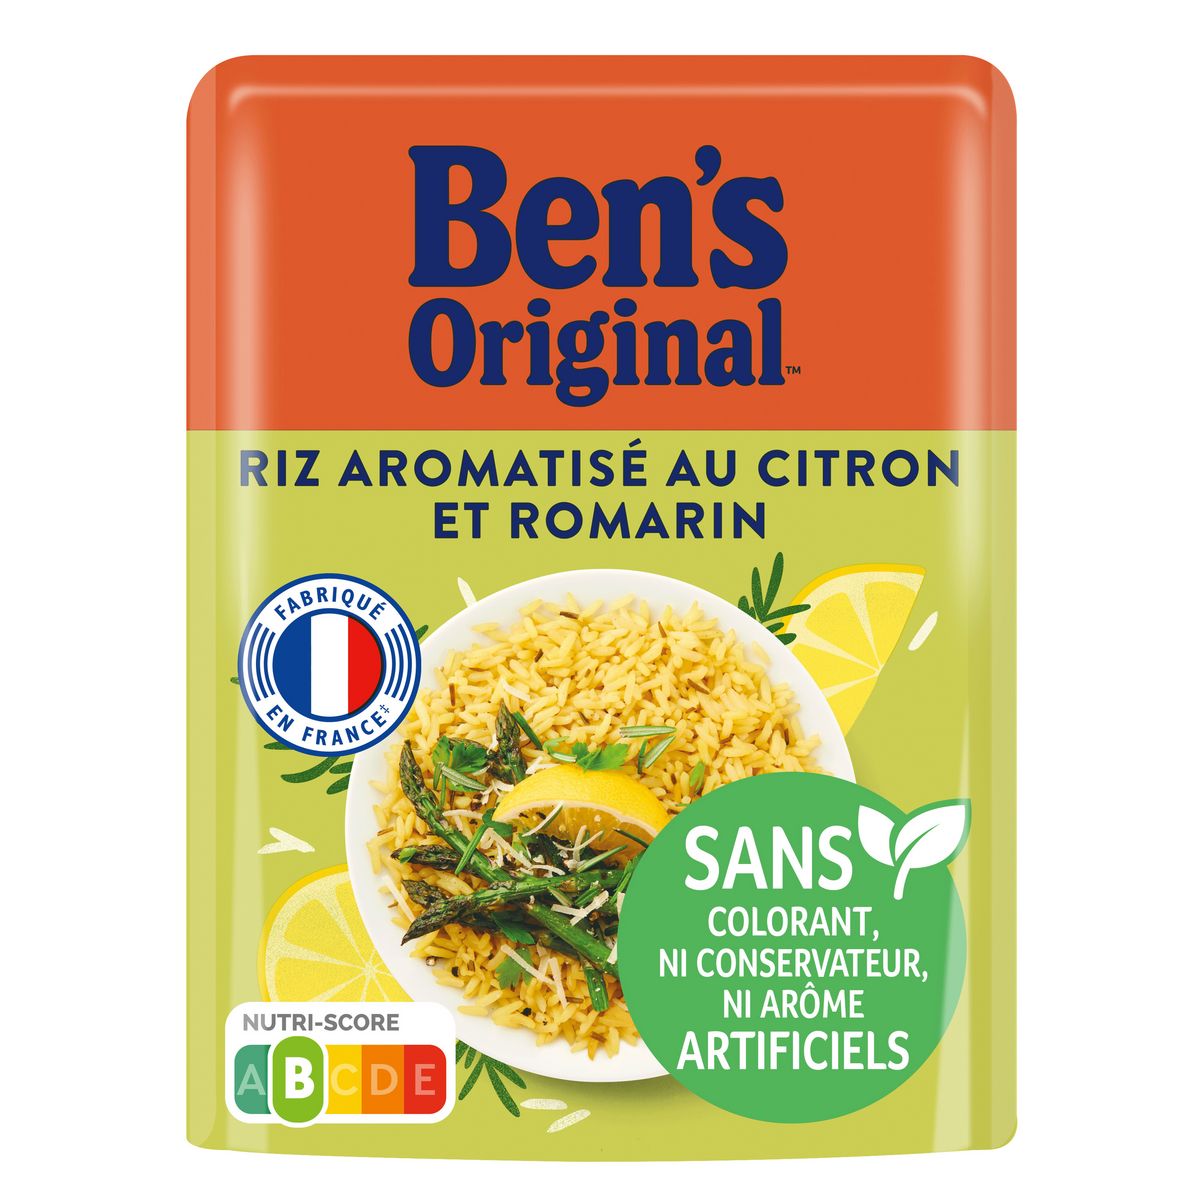 BEN'S ORIGINAL Riz aromatisé au citron et romarin sachet prêt en 2 minutes 220g